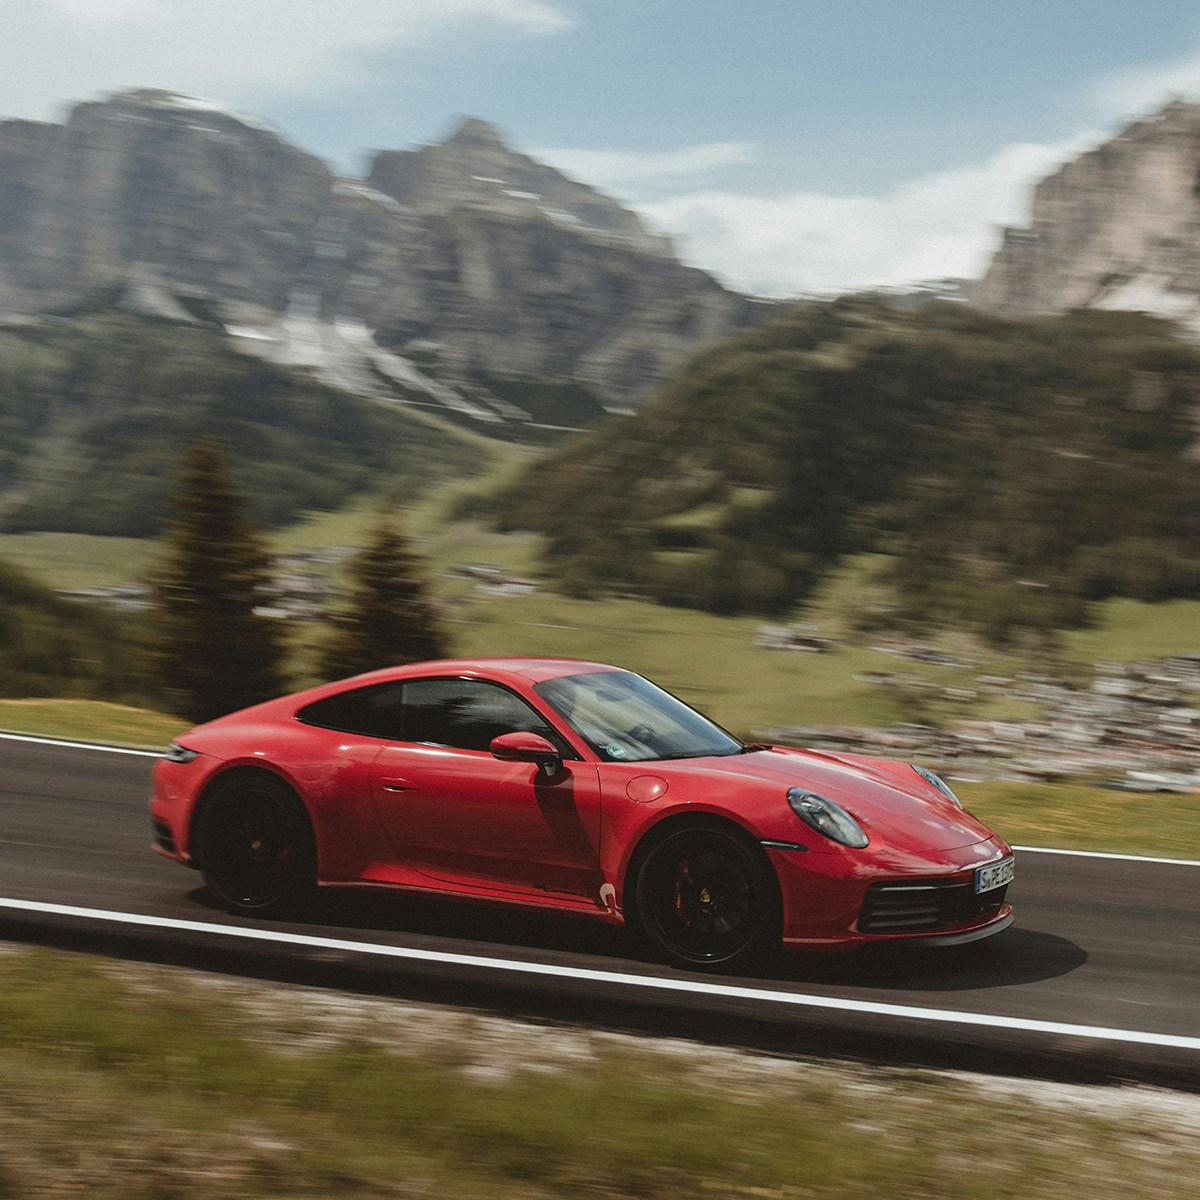 Une voiture Porsche rouge roulant sur une route dans les Alpes.